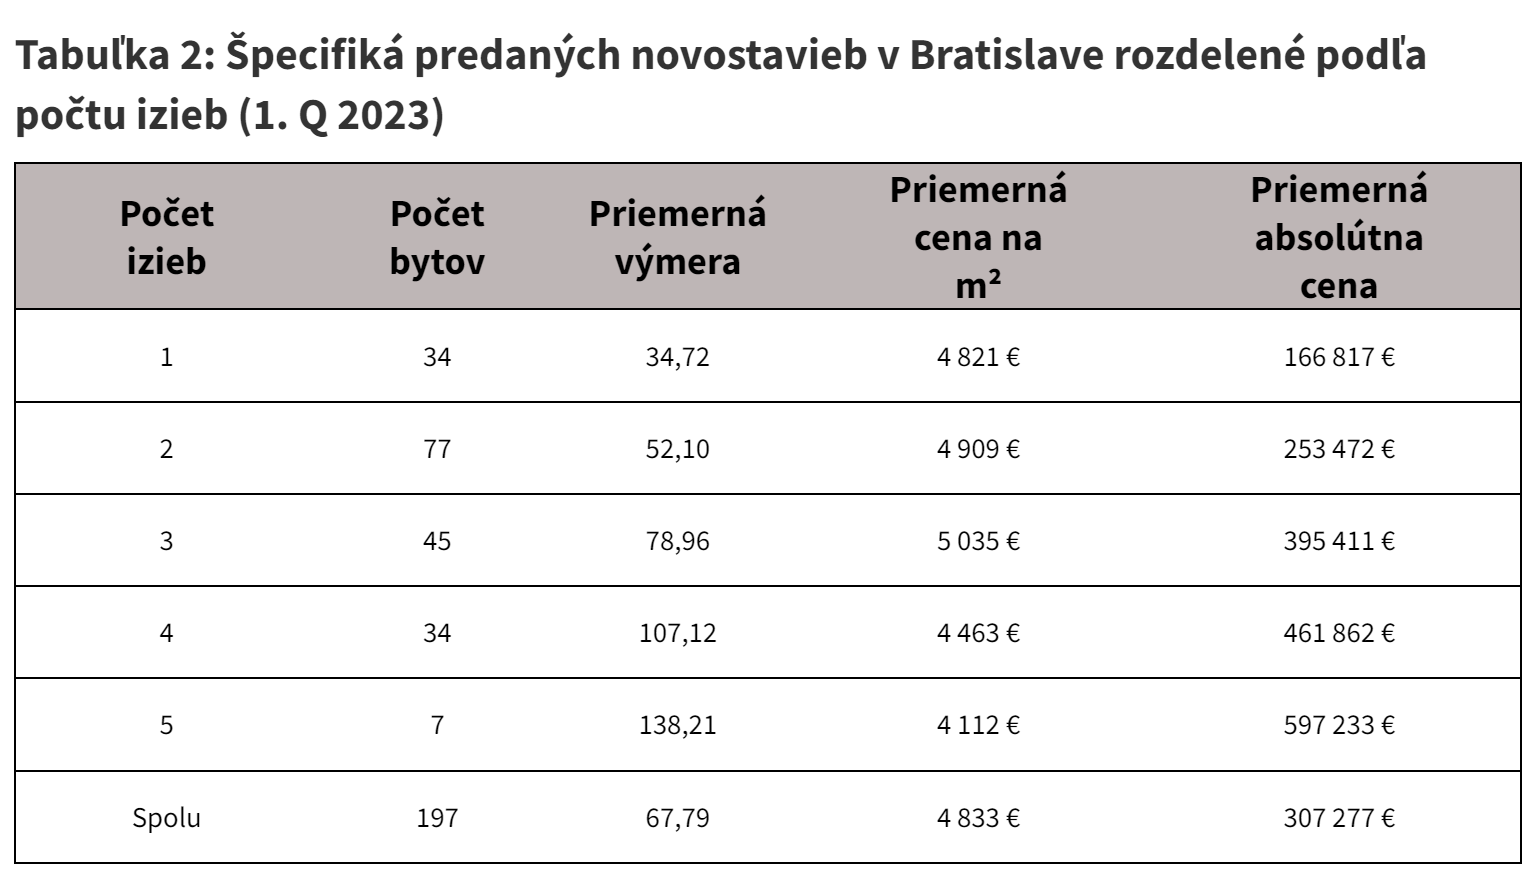 Tabuľka 2: Špecifiká predaných novostavieb v Bratislave rozdelené podľa počtu izieb (1. Q 2023).